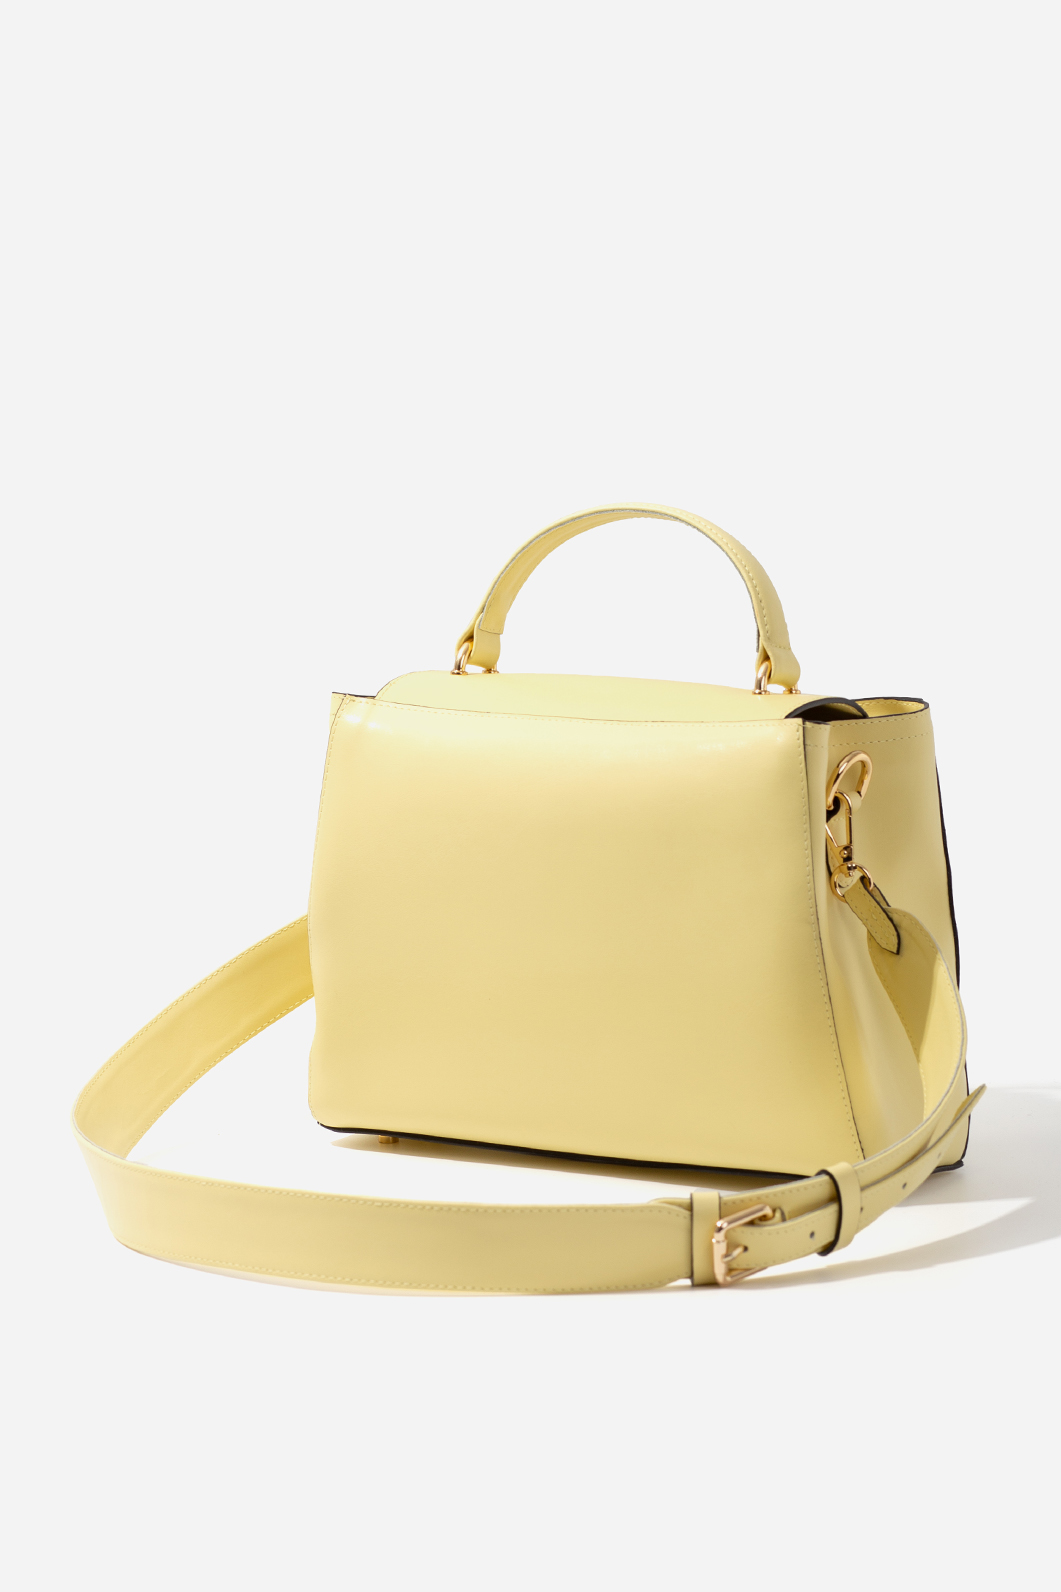 ERNA SOFT light yellow bag /gold/